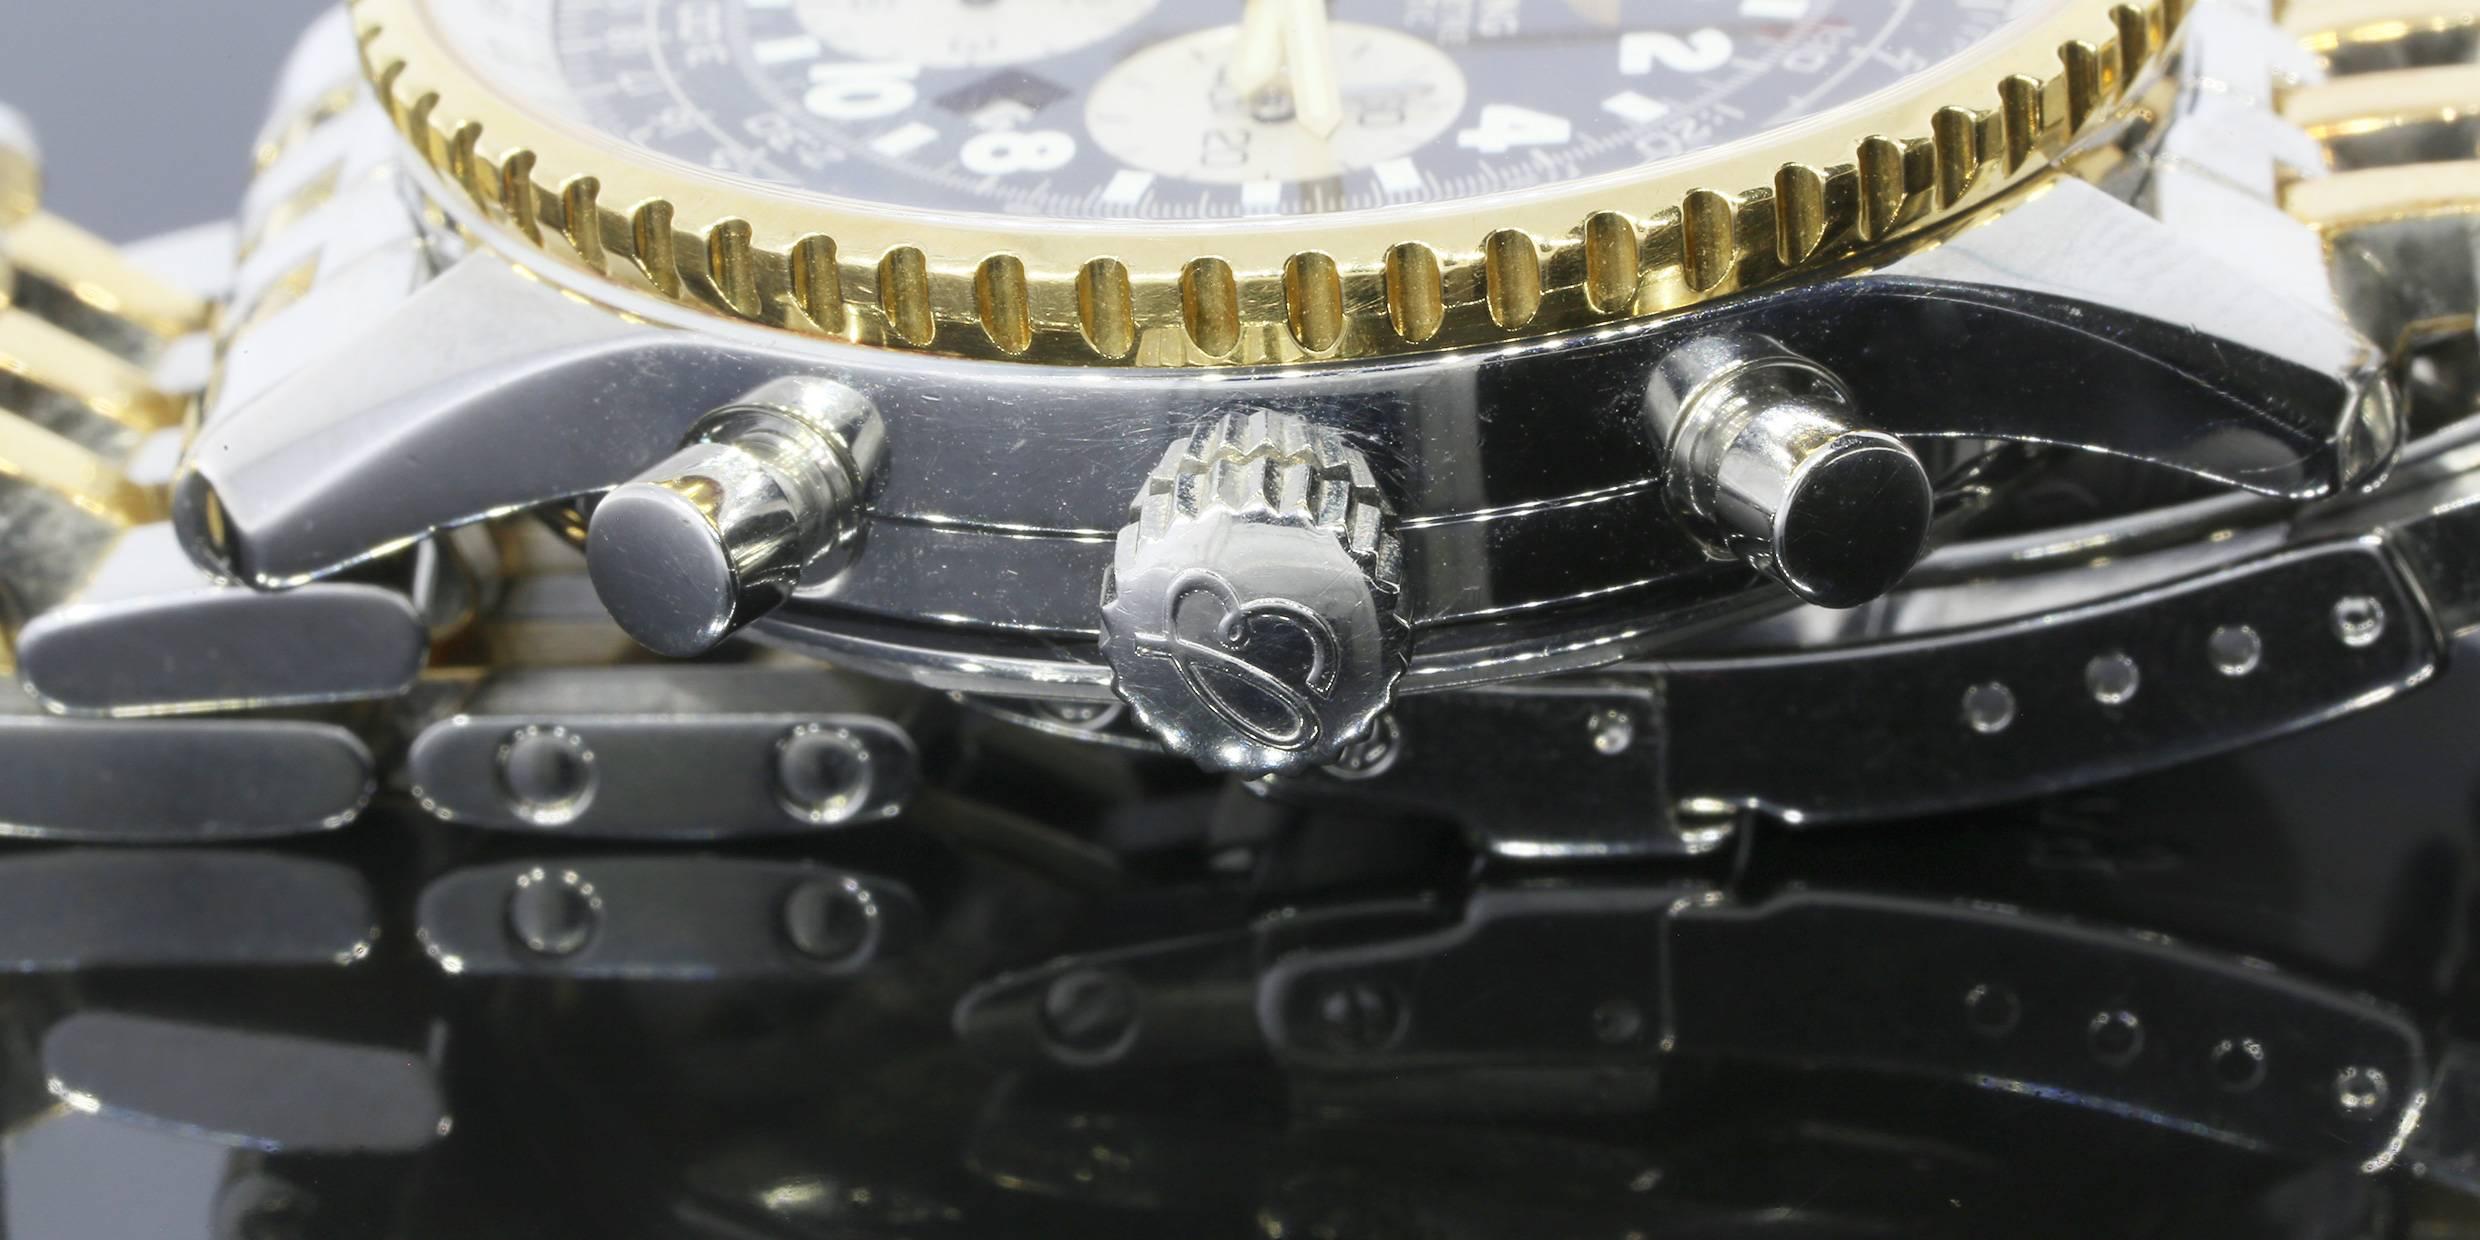 Ce superbe garde-temps Breitling est parfait pour tout collectionneur de montres ! La montre-bracelet est une Cosmonaute Navitimer Two-Tone avec un cadran bleu foncé. Le bracelet et le boîtier sont en or jaune 18 carats et en acier inoxydable. La